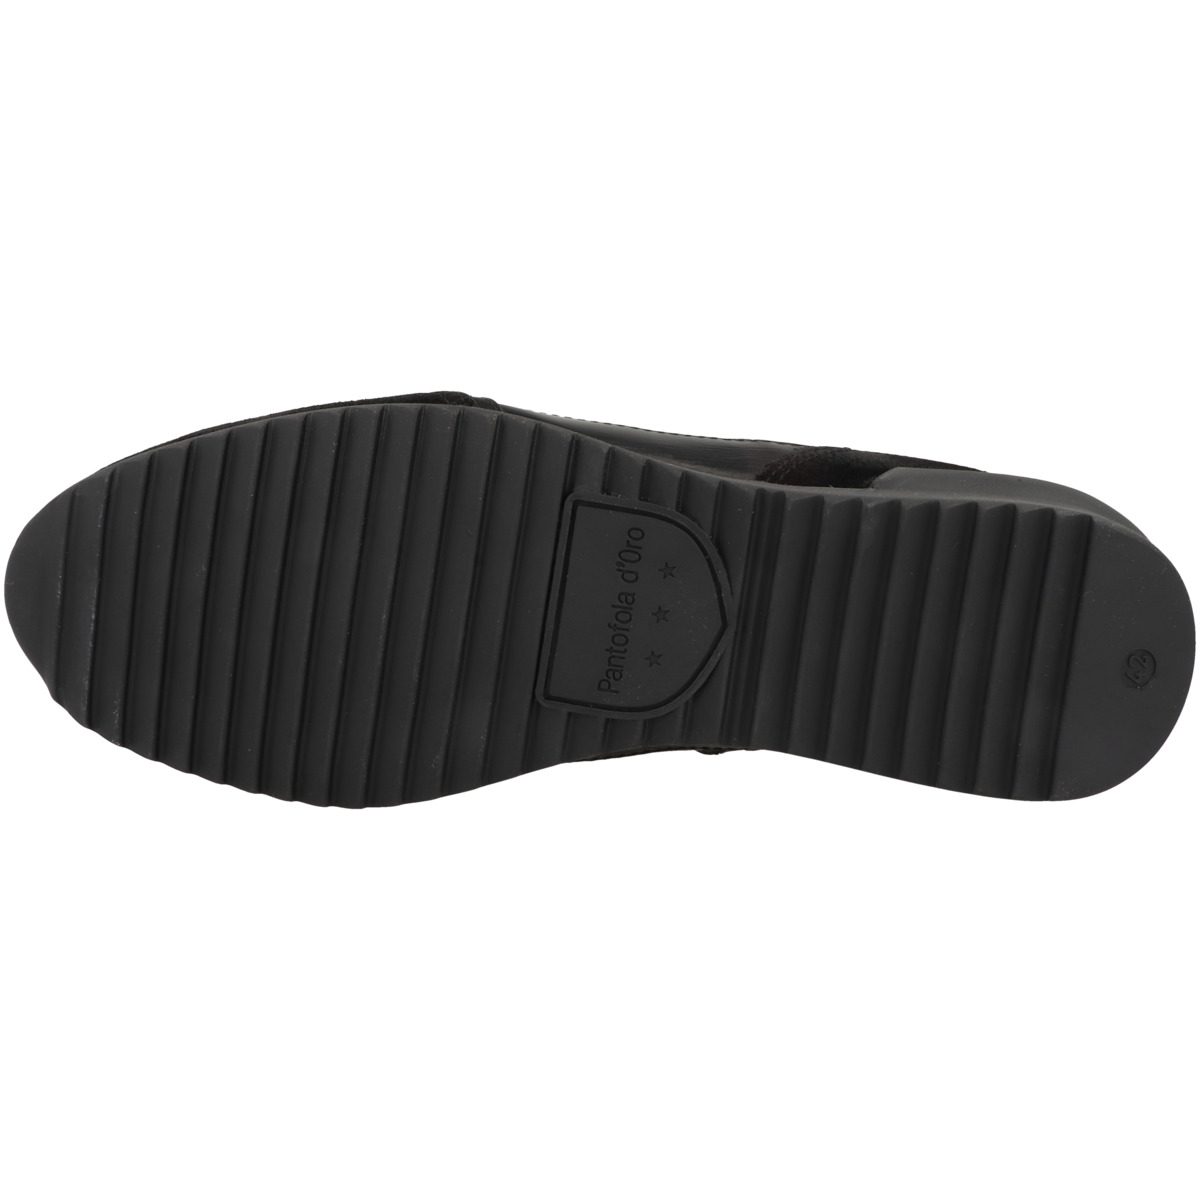 Pantofola d'Oro Matera 2.0 Uomo Low Sneaker low